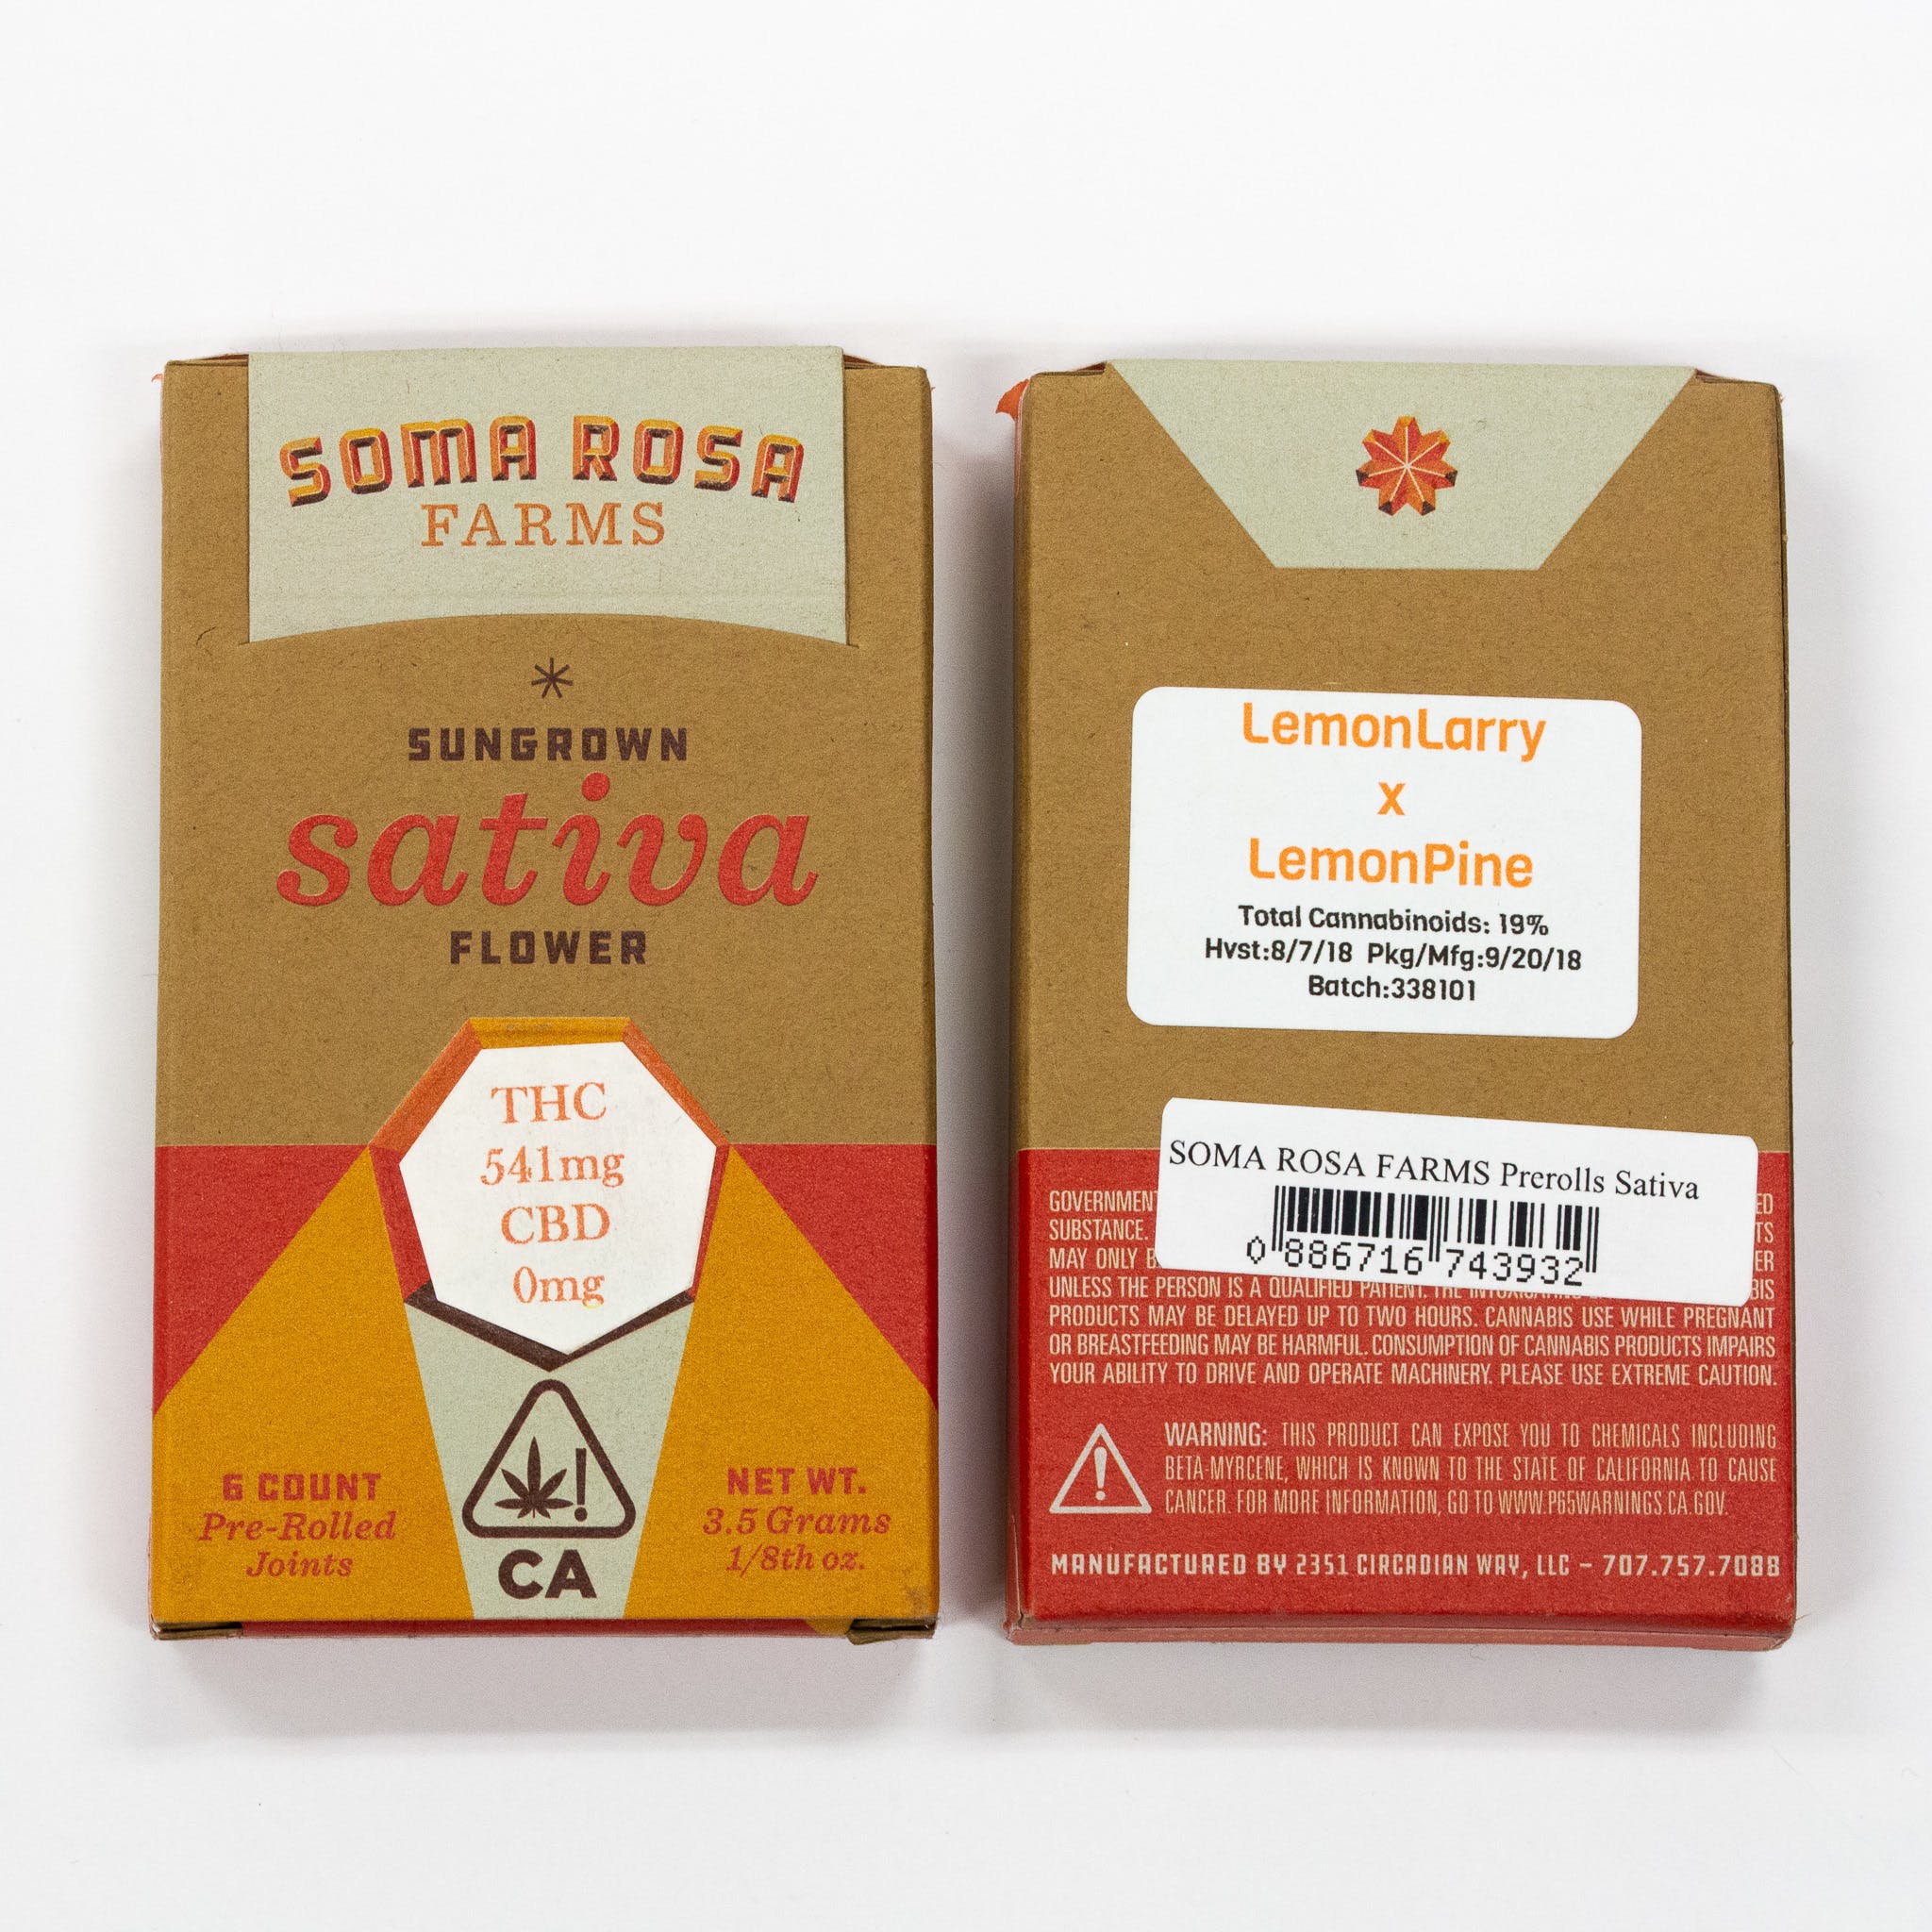 SOMA ROSA FARMS LemonLarry X LemonPine 6 Count